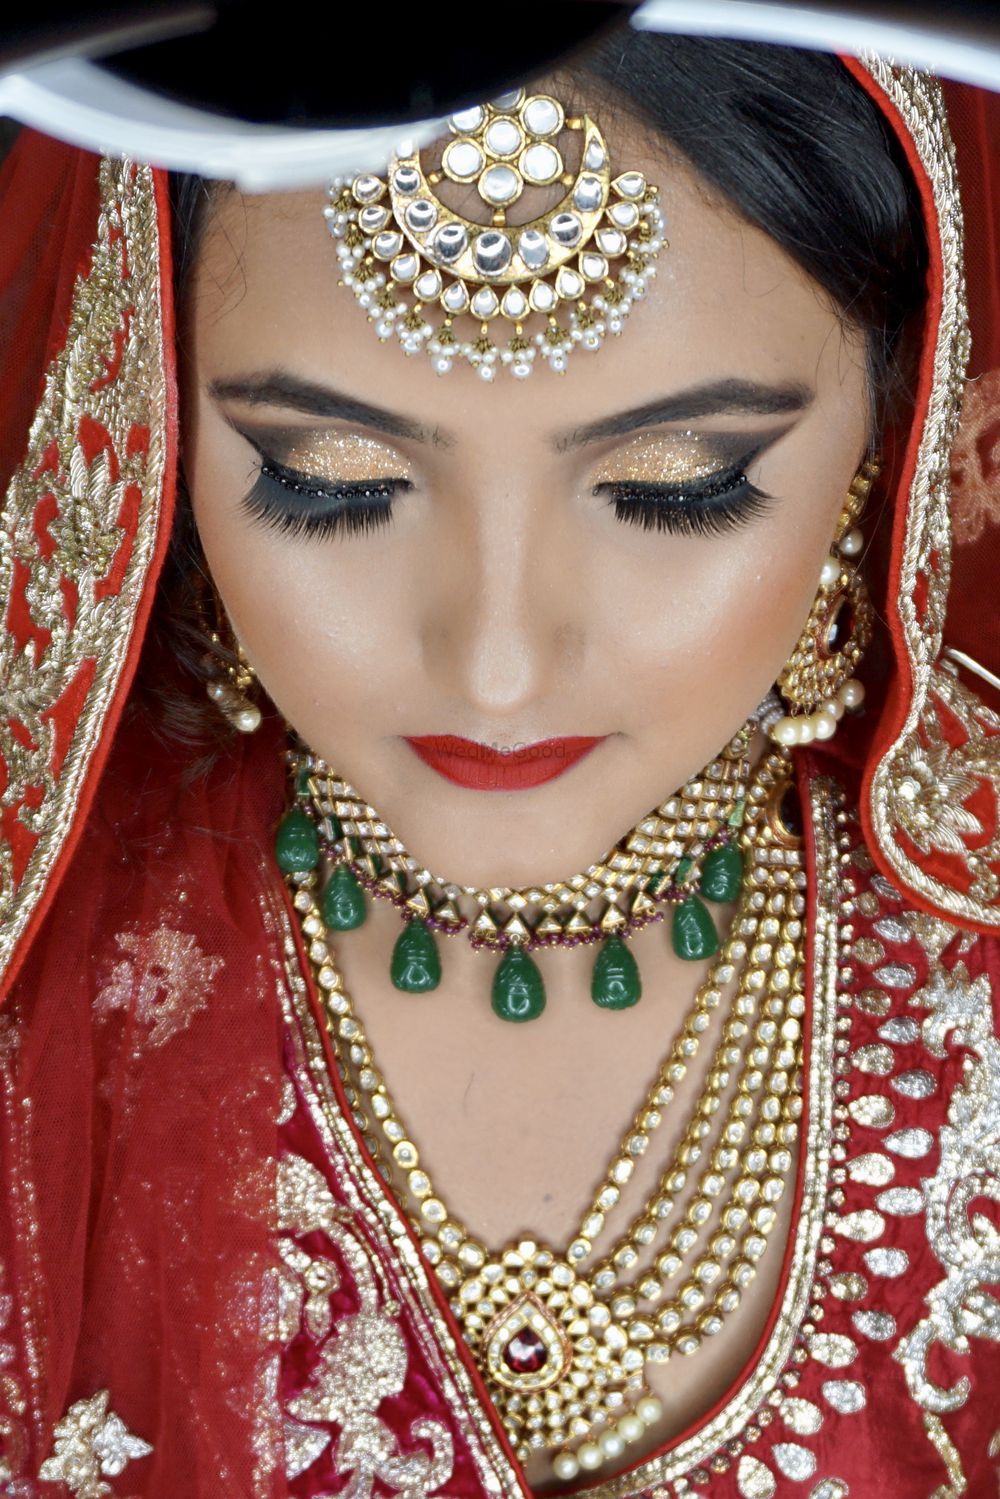 Photo By Neha Makeupartistry  - Bridal Makeup